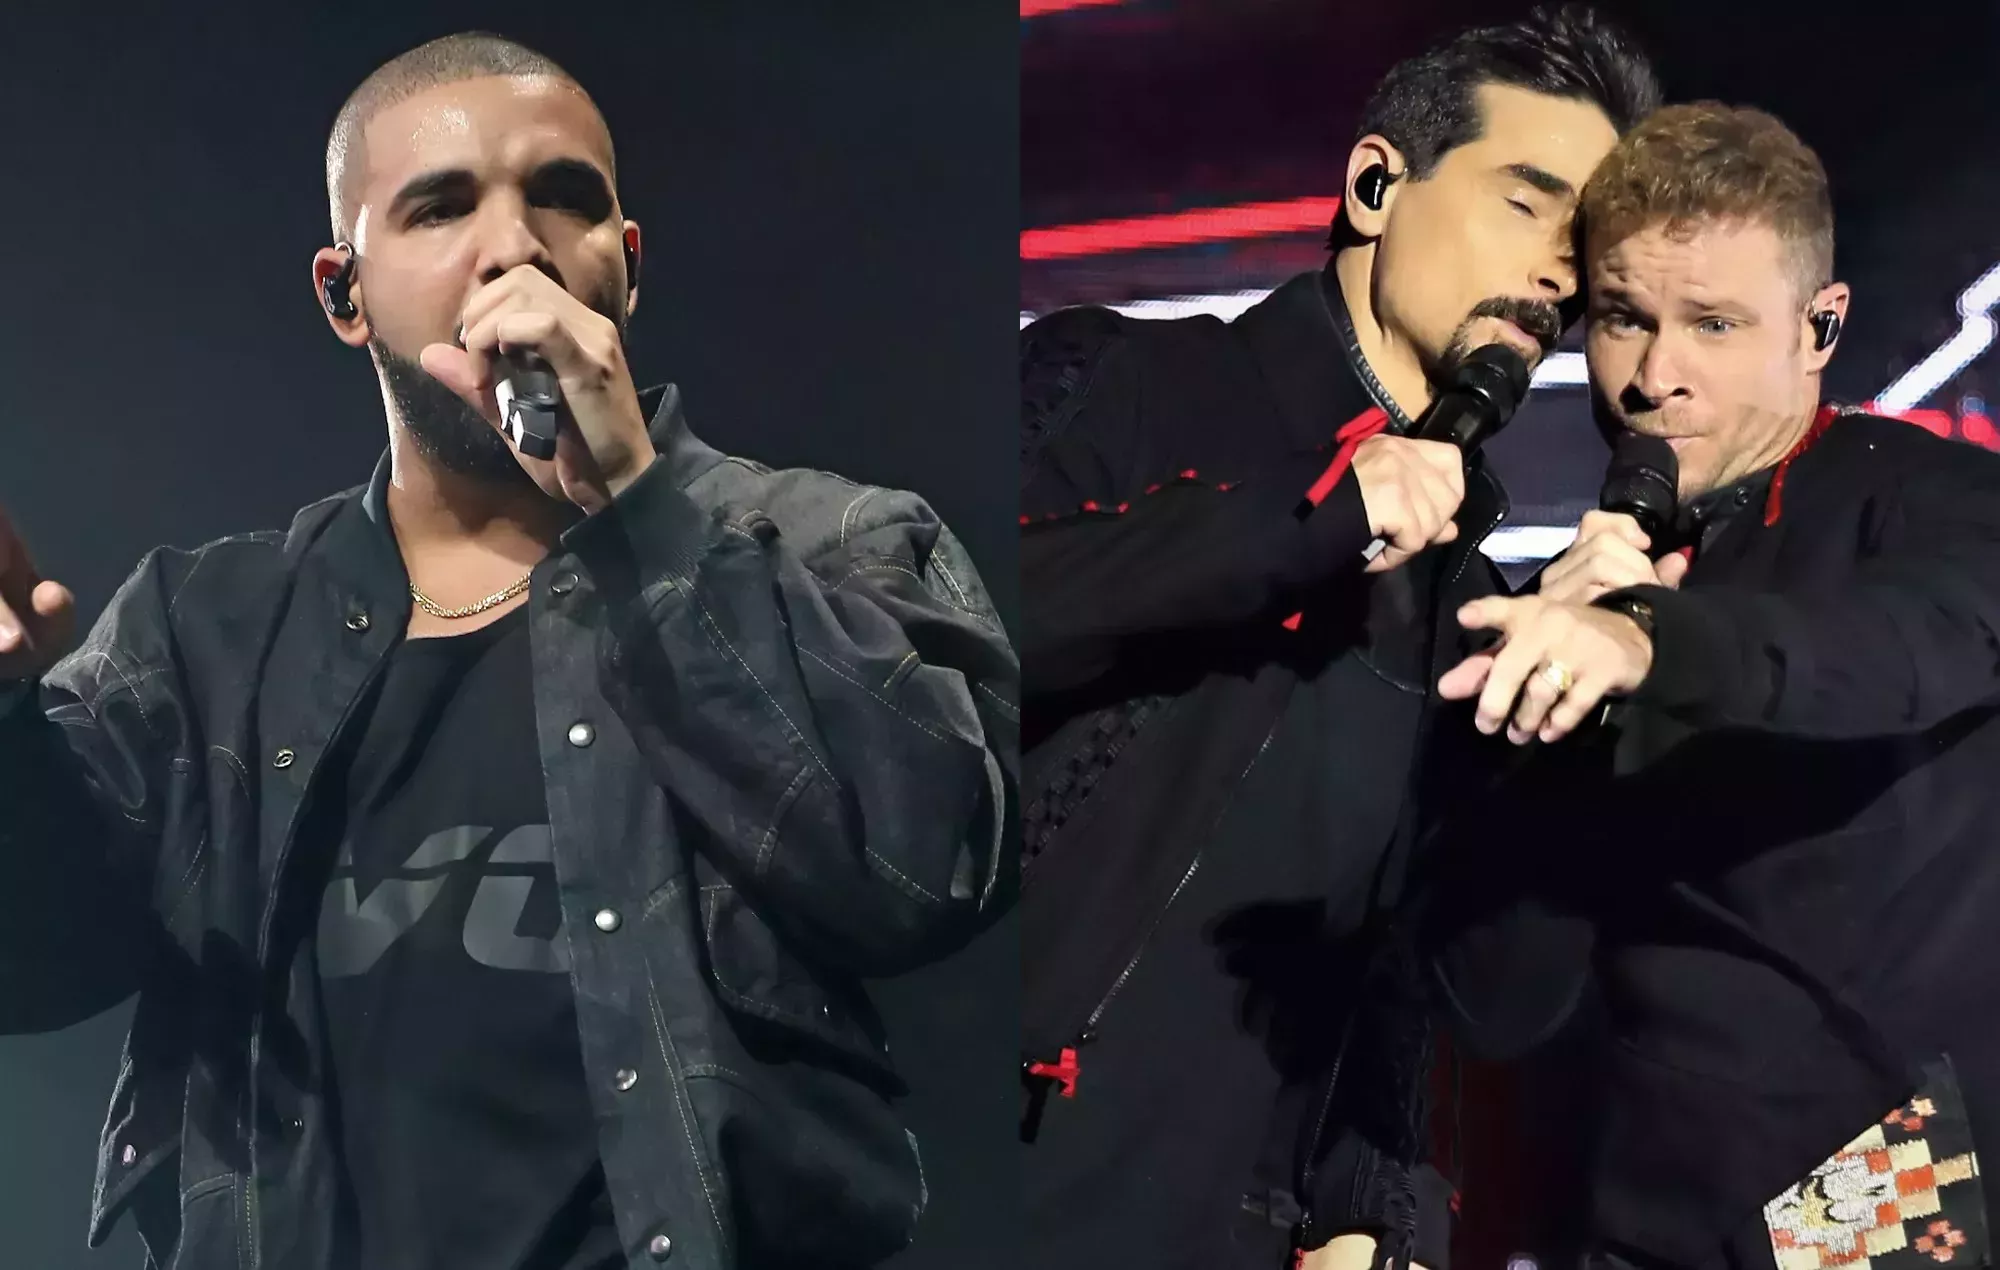 Mira cómo Drake se une a los Backstreet Boys en el escenario durante 'I Want It That Way'